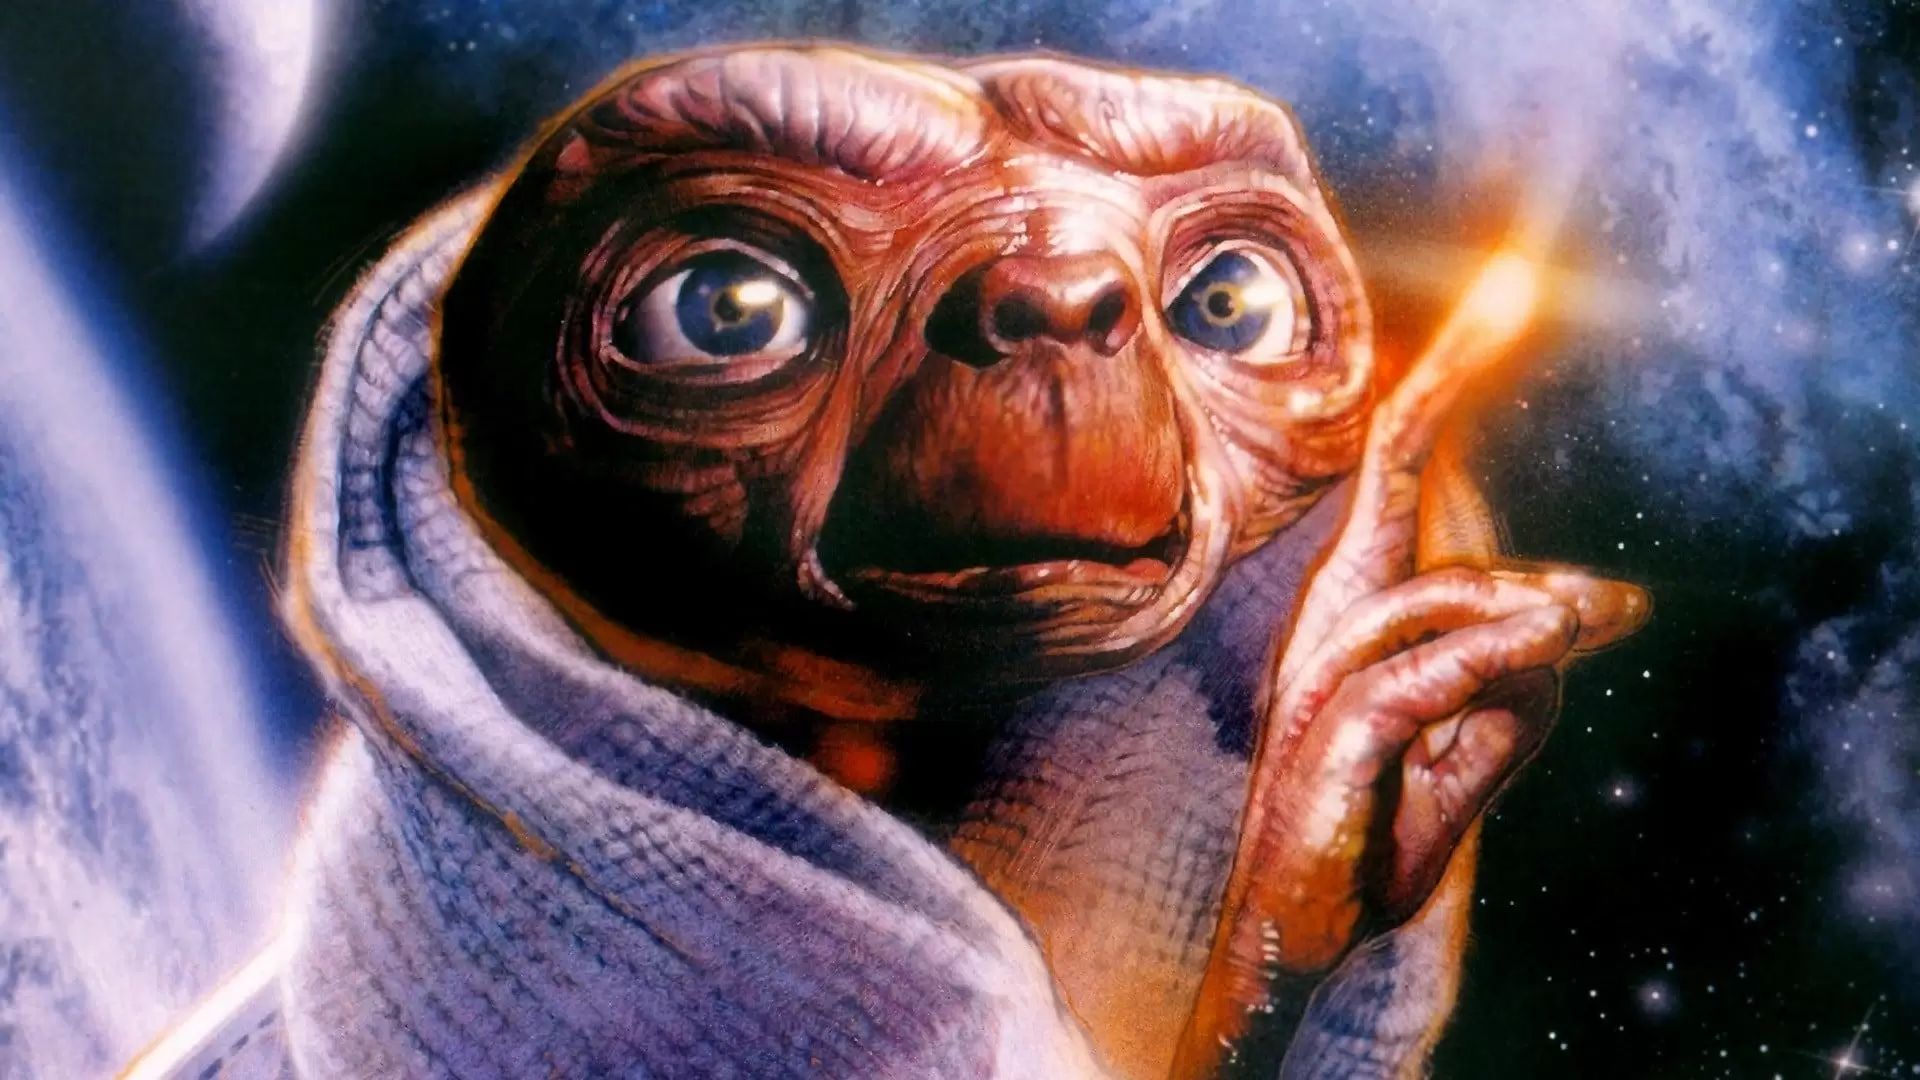 دانلود فیلم E.T. the Extra-Terrestrial 1982 (ای تی. موجود فضایی) با زیرنویس فارسی و تماشای آنلاین